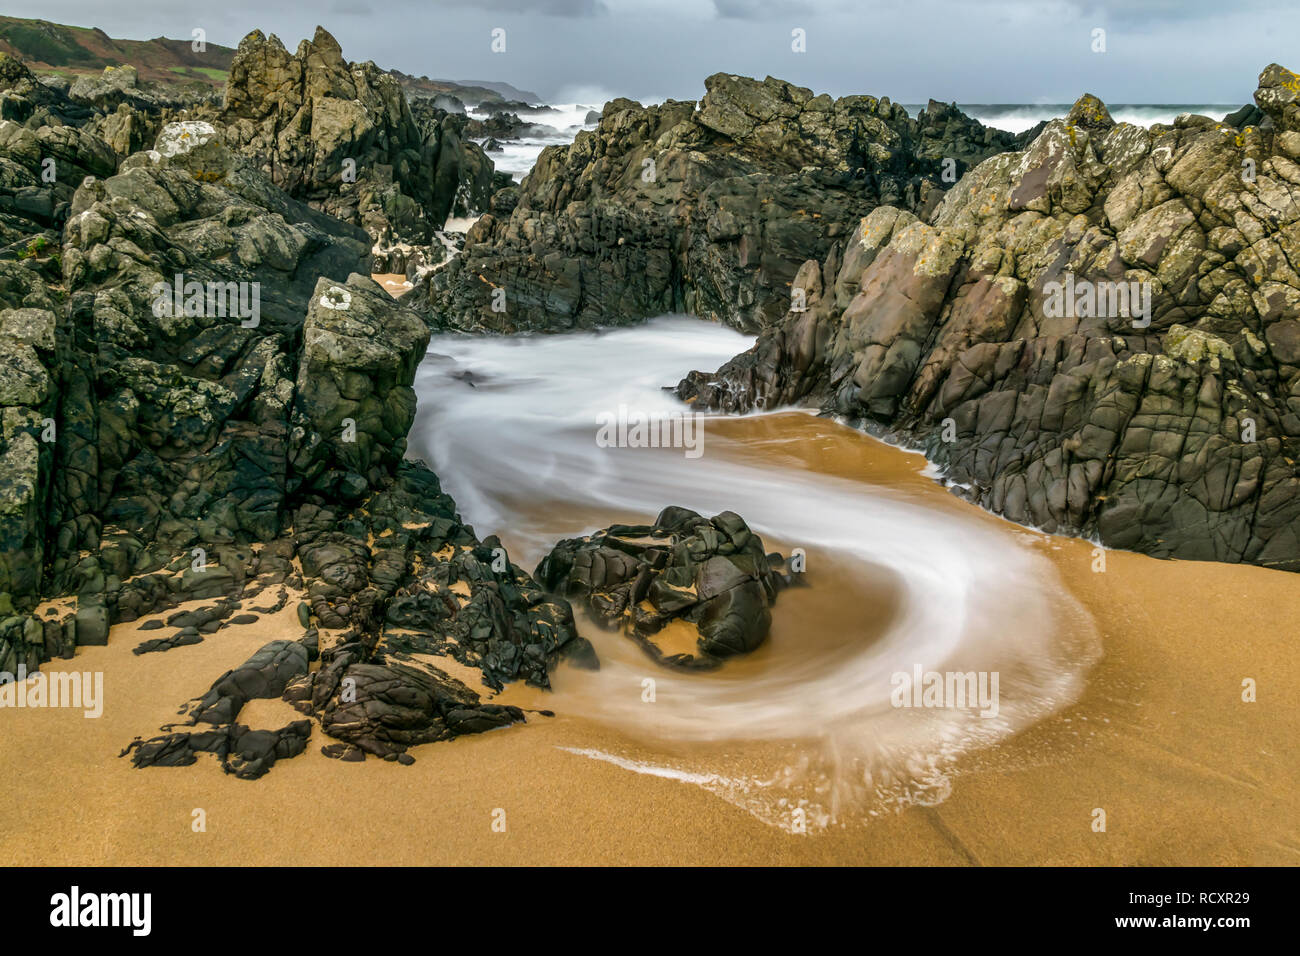 Velocidad de obturación lenta fue utilizada para captar esta imagen de un remolino de onda aunque las rocas en la playa. Al retirarse el agua crea curvas de espuma blanca Foto de stock